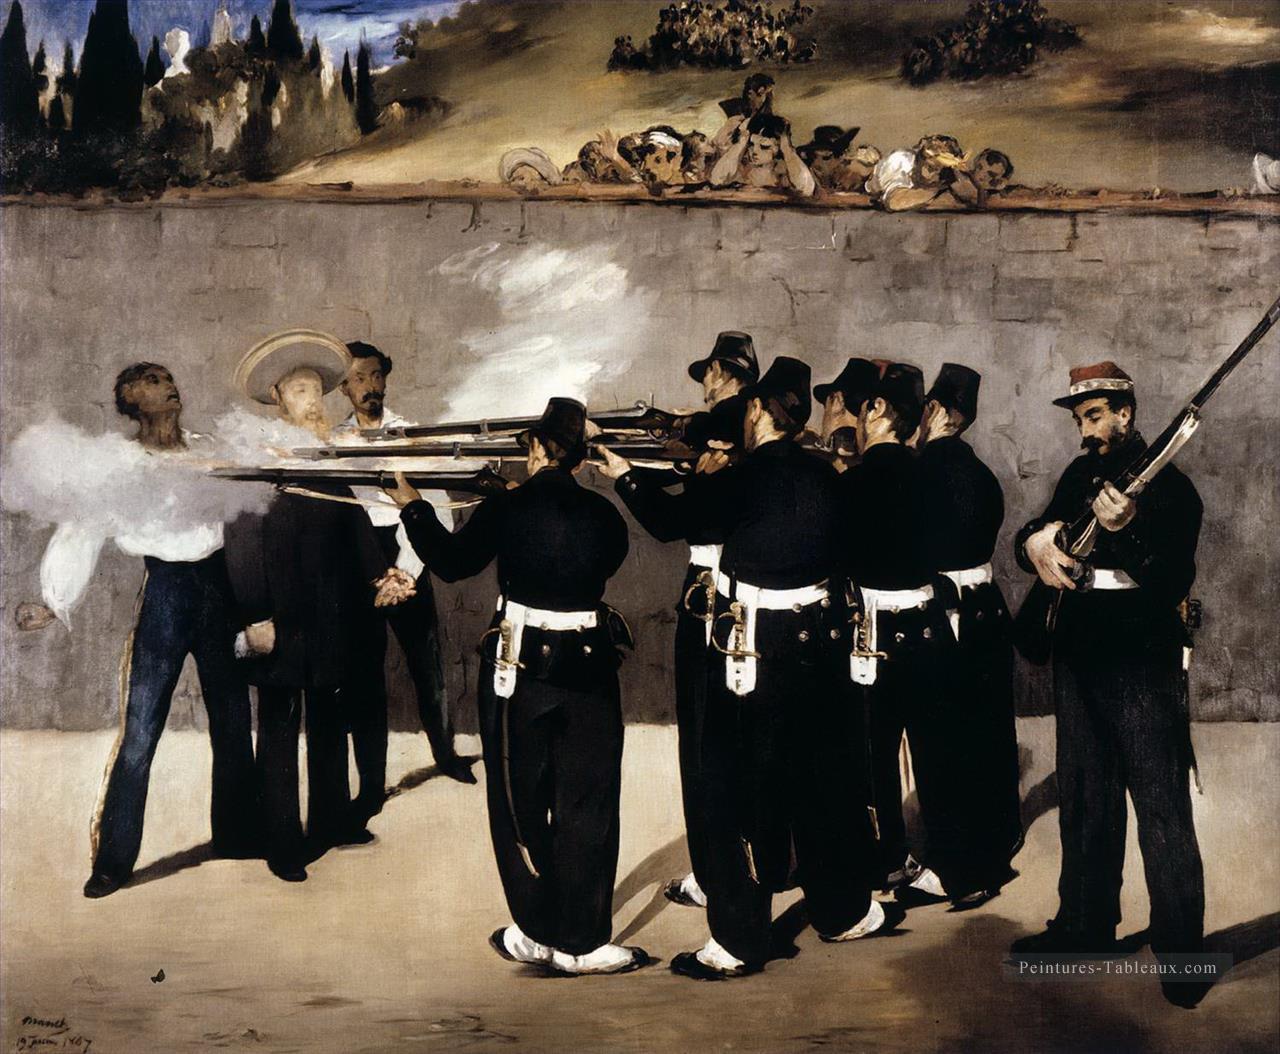 L’exécution de l’empereur Maximilien du Mexique Édouard Manet Peintures à l'huile